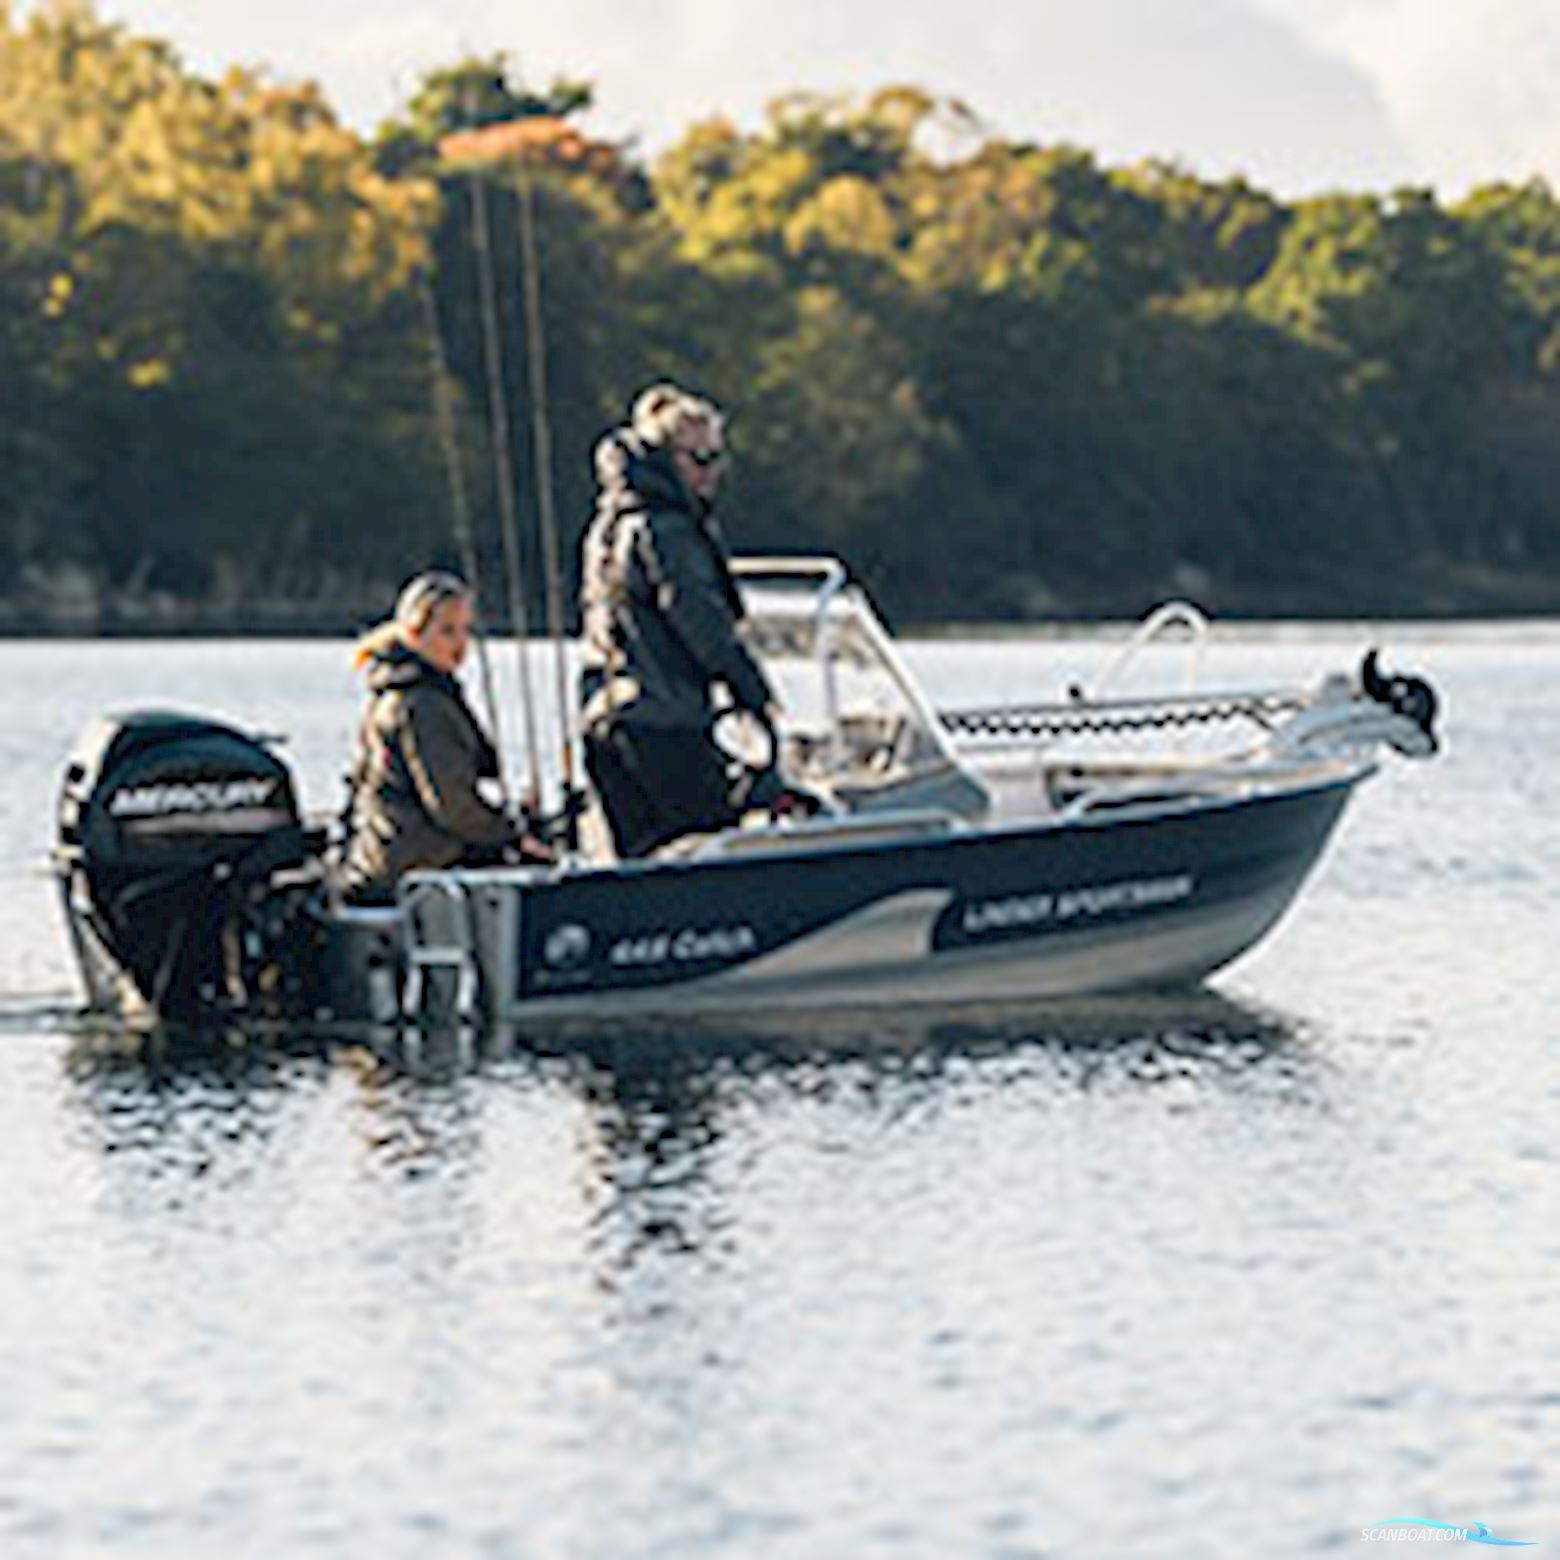 Linder 445 Sportsman Catch (uden motor) Jolle 2021, Dänemark